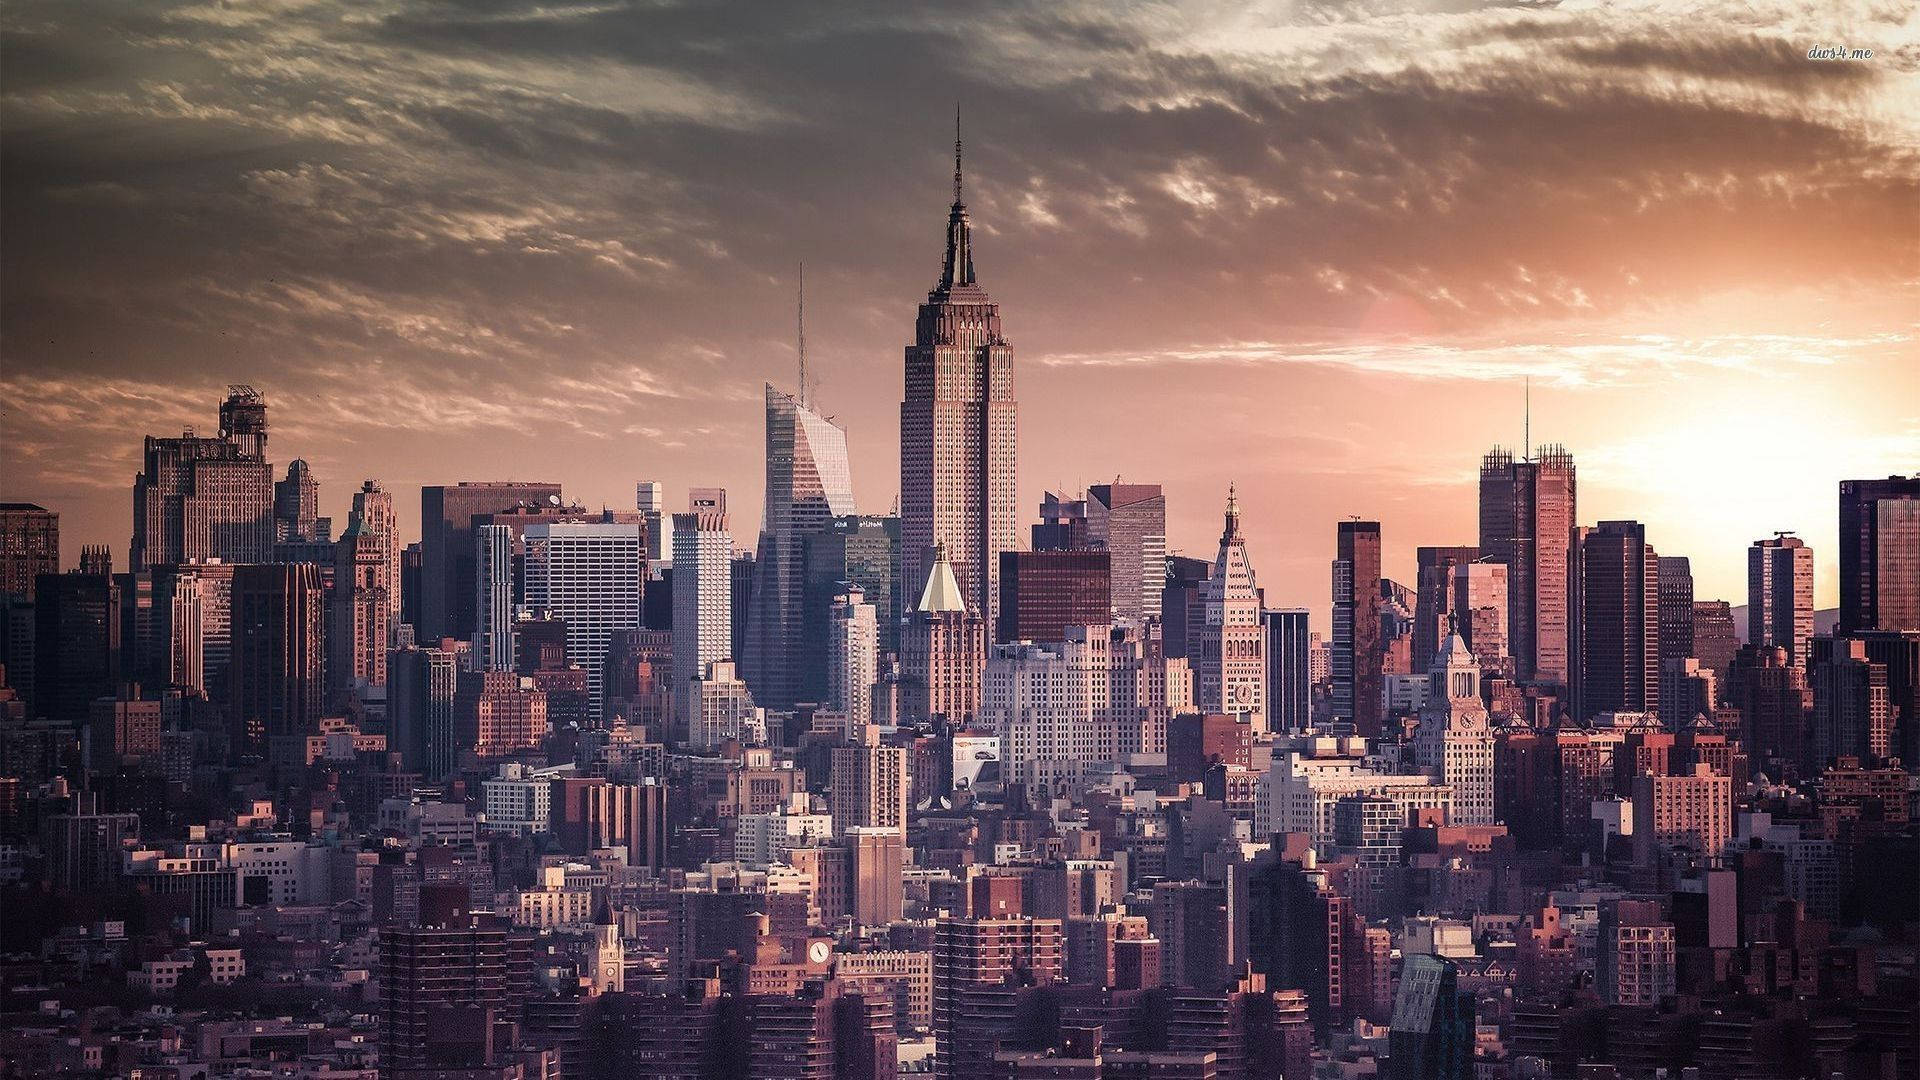 New York City Golden Sunset